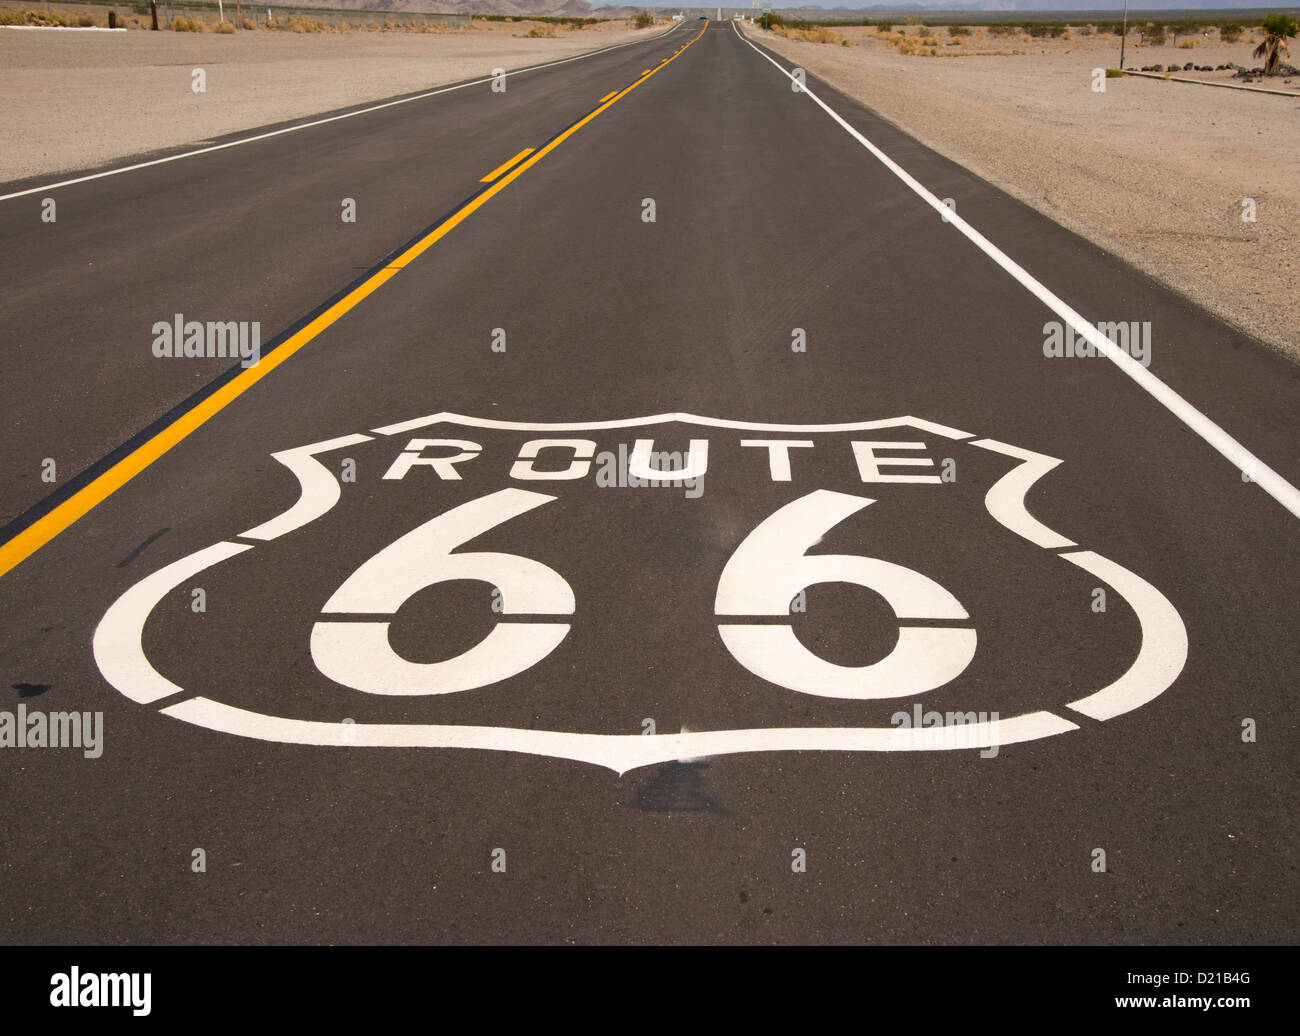 Une route historique 66 emblème peint sur la surface d'une route Banque D'Images